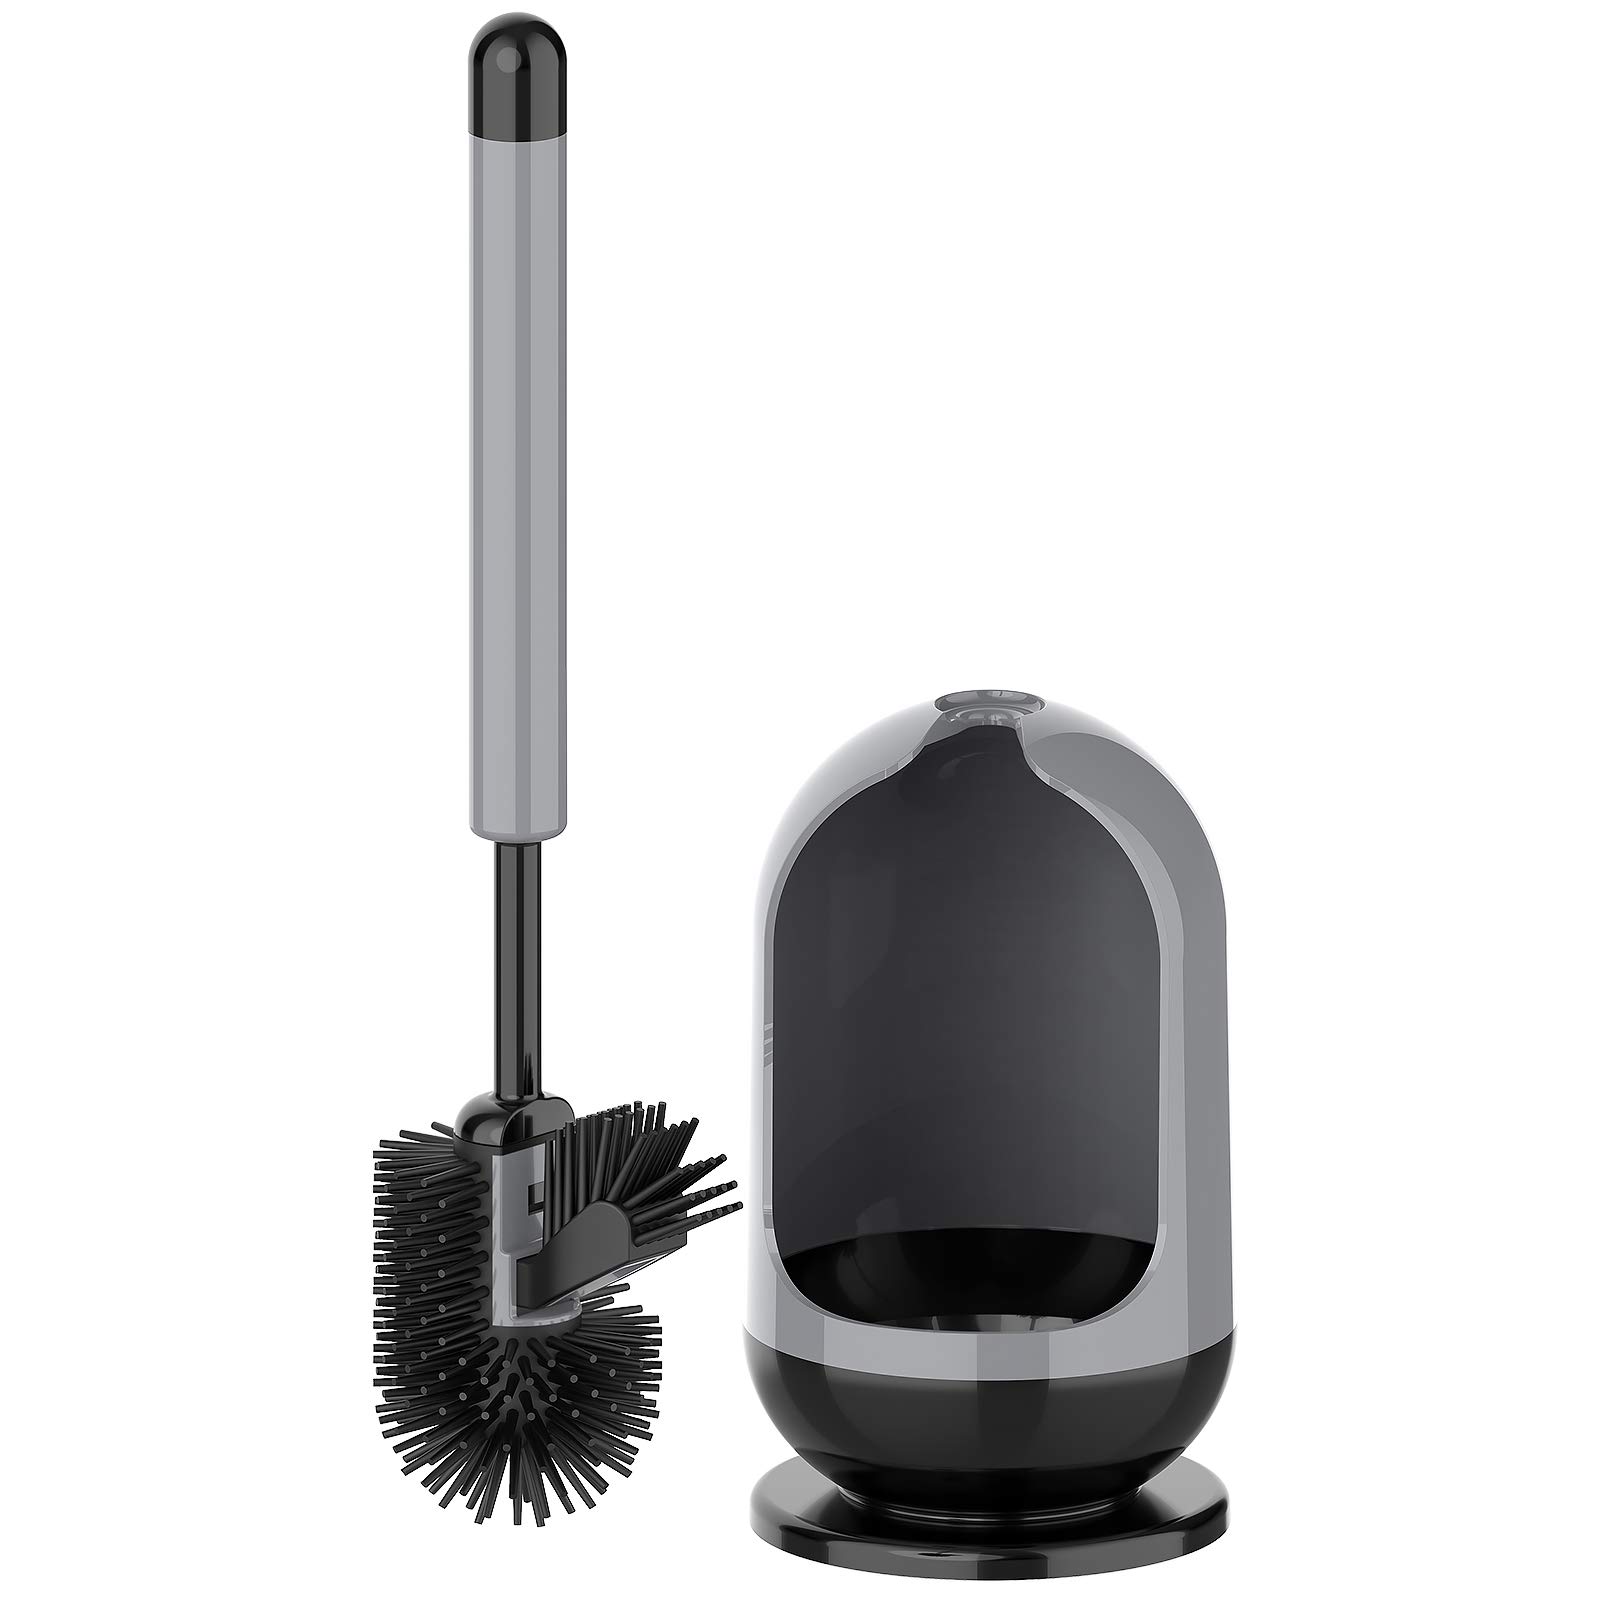 Toilet Bowl Brush and Holder for Bathroom - Under-Rim Brush Head